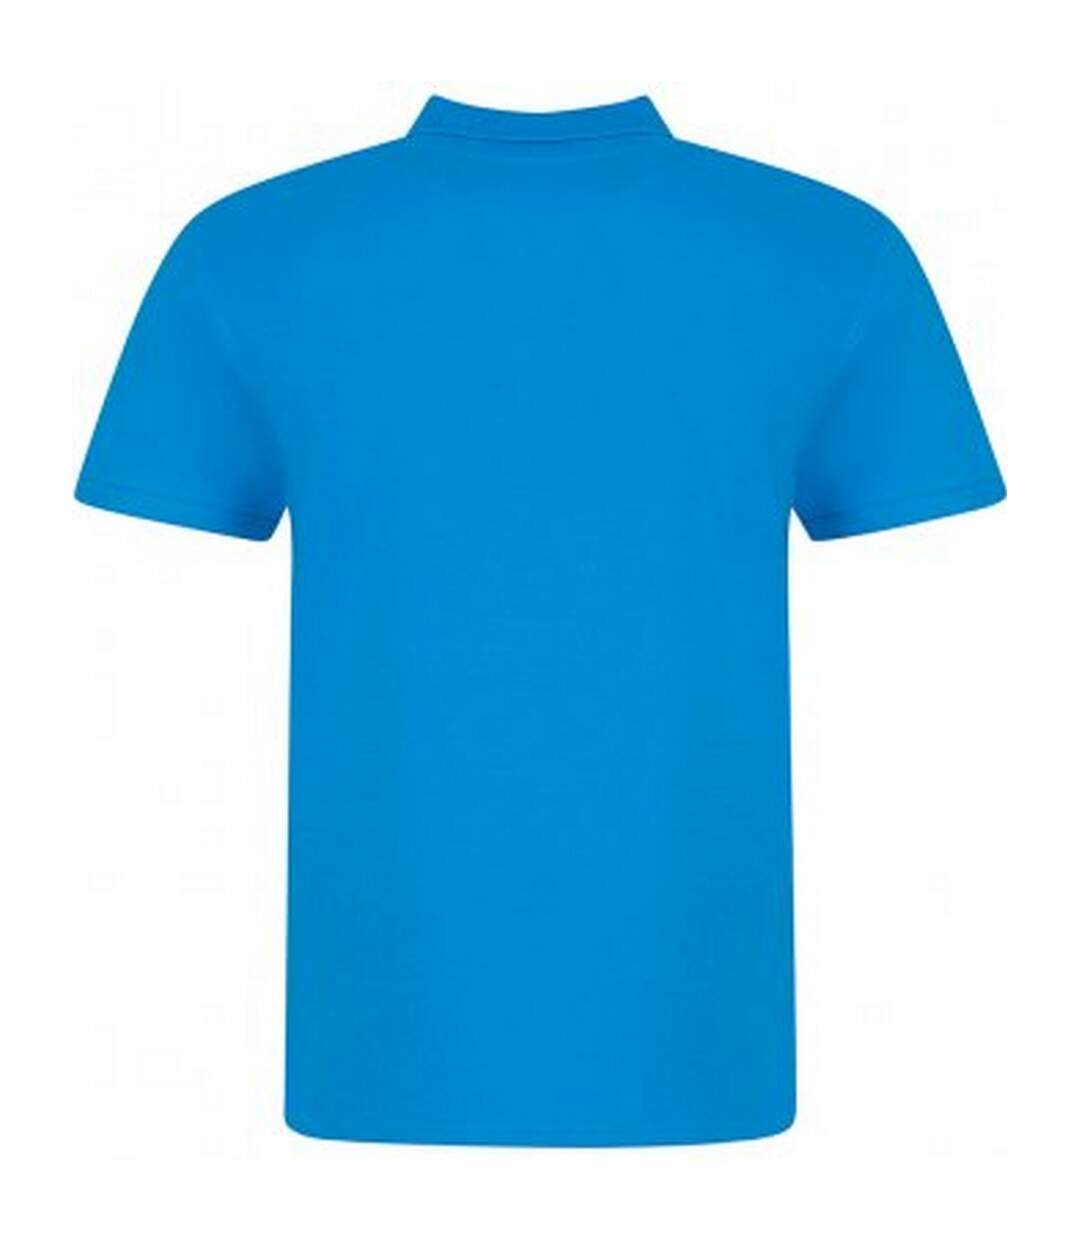 Awdis Mens Piqu Cotton Short-Sleeved Polo Shirt (Azure) - UTPC4134